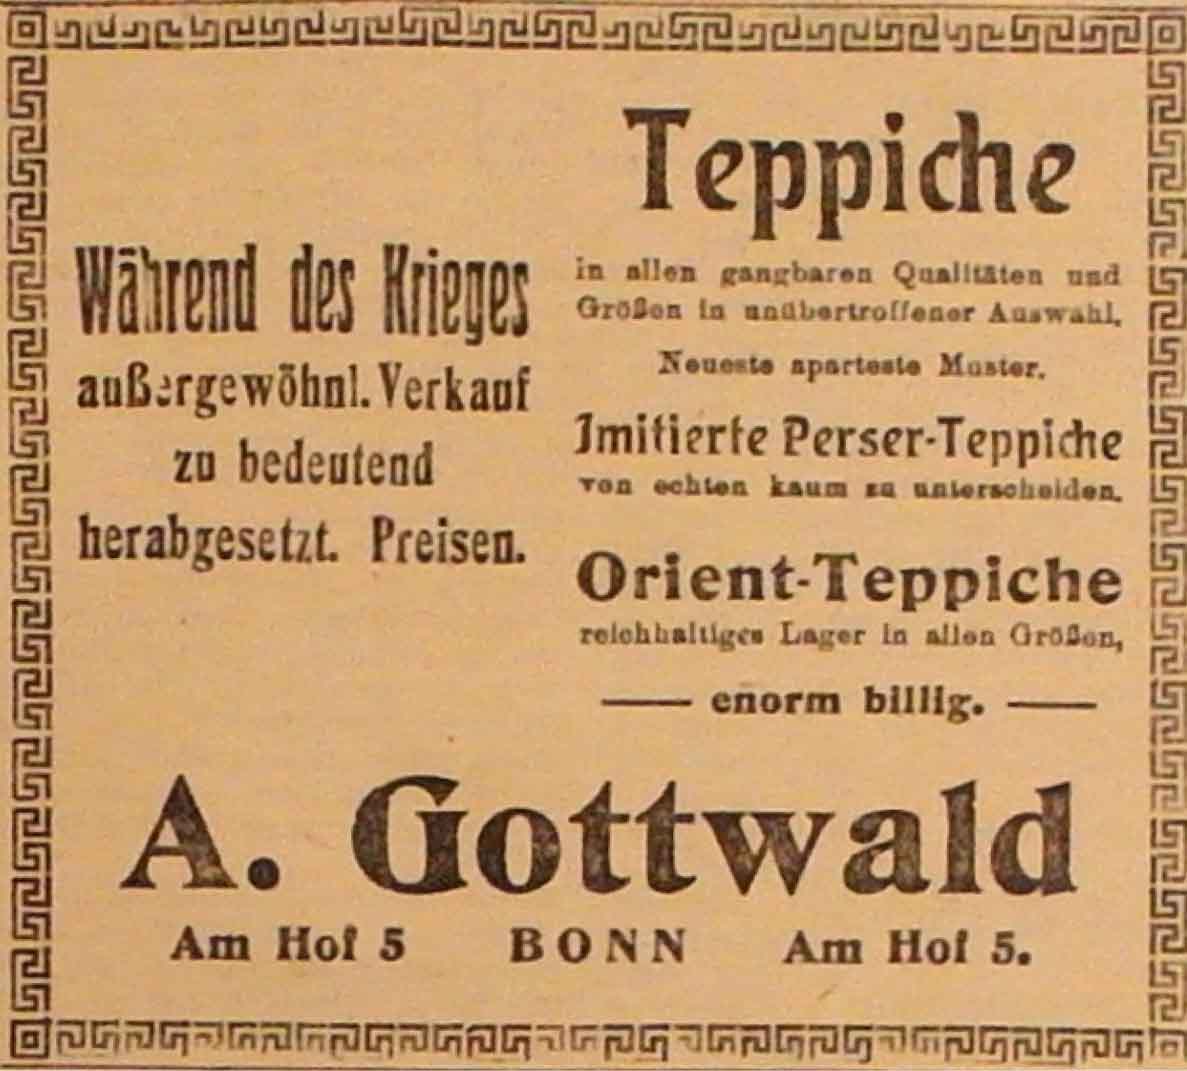 Anzeige im General-Anzeiger vom 22. November 1914